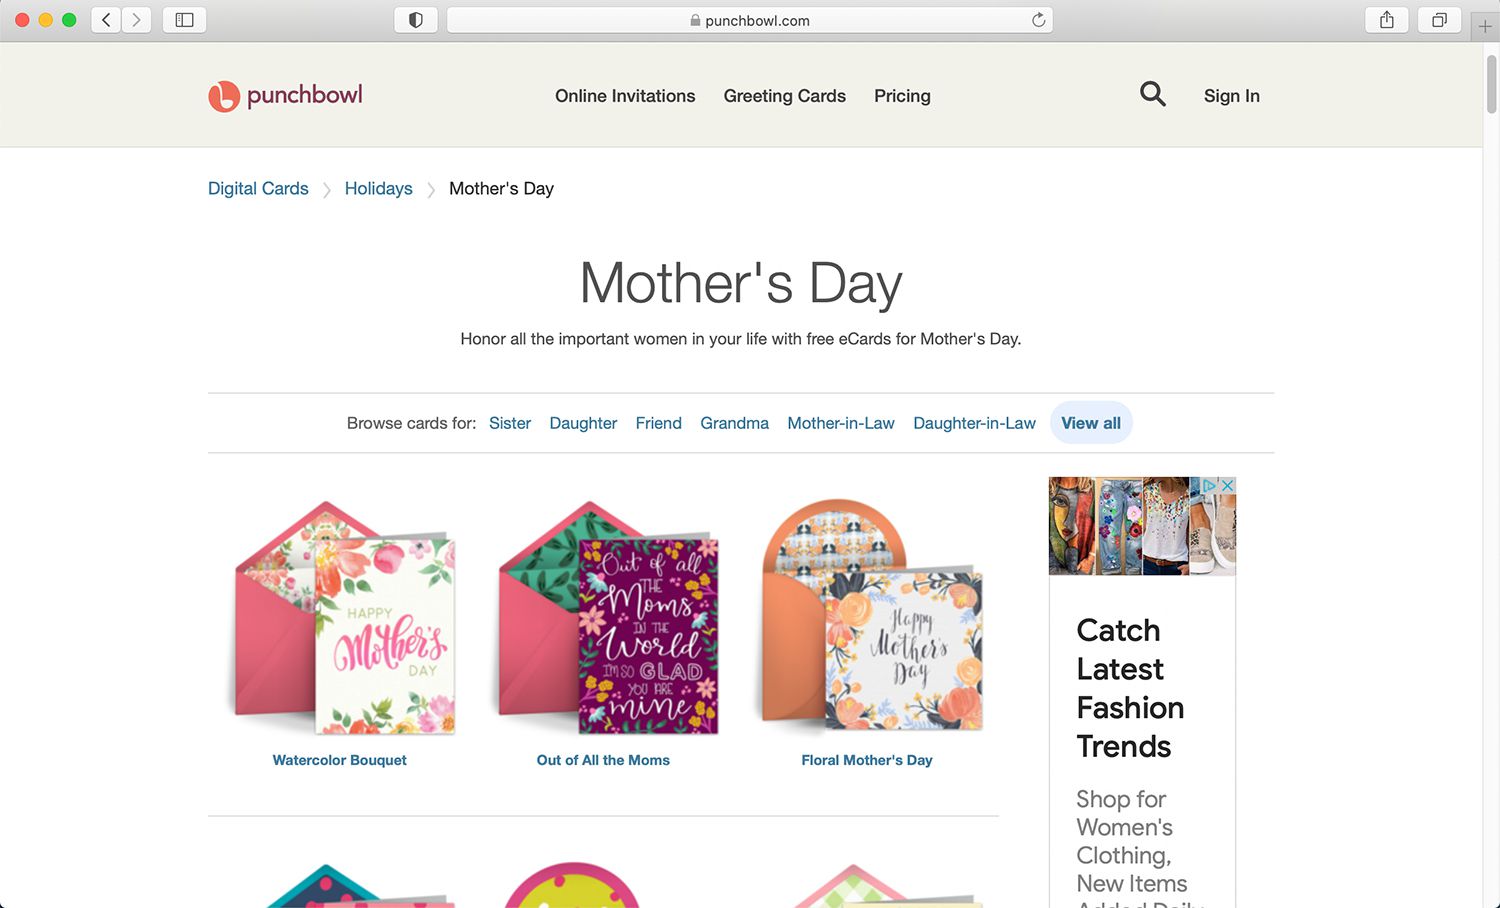 Web pro e-karty Punchbowl zdarma ke Dni matek a jiným svátkům